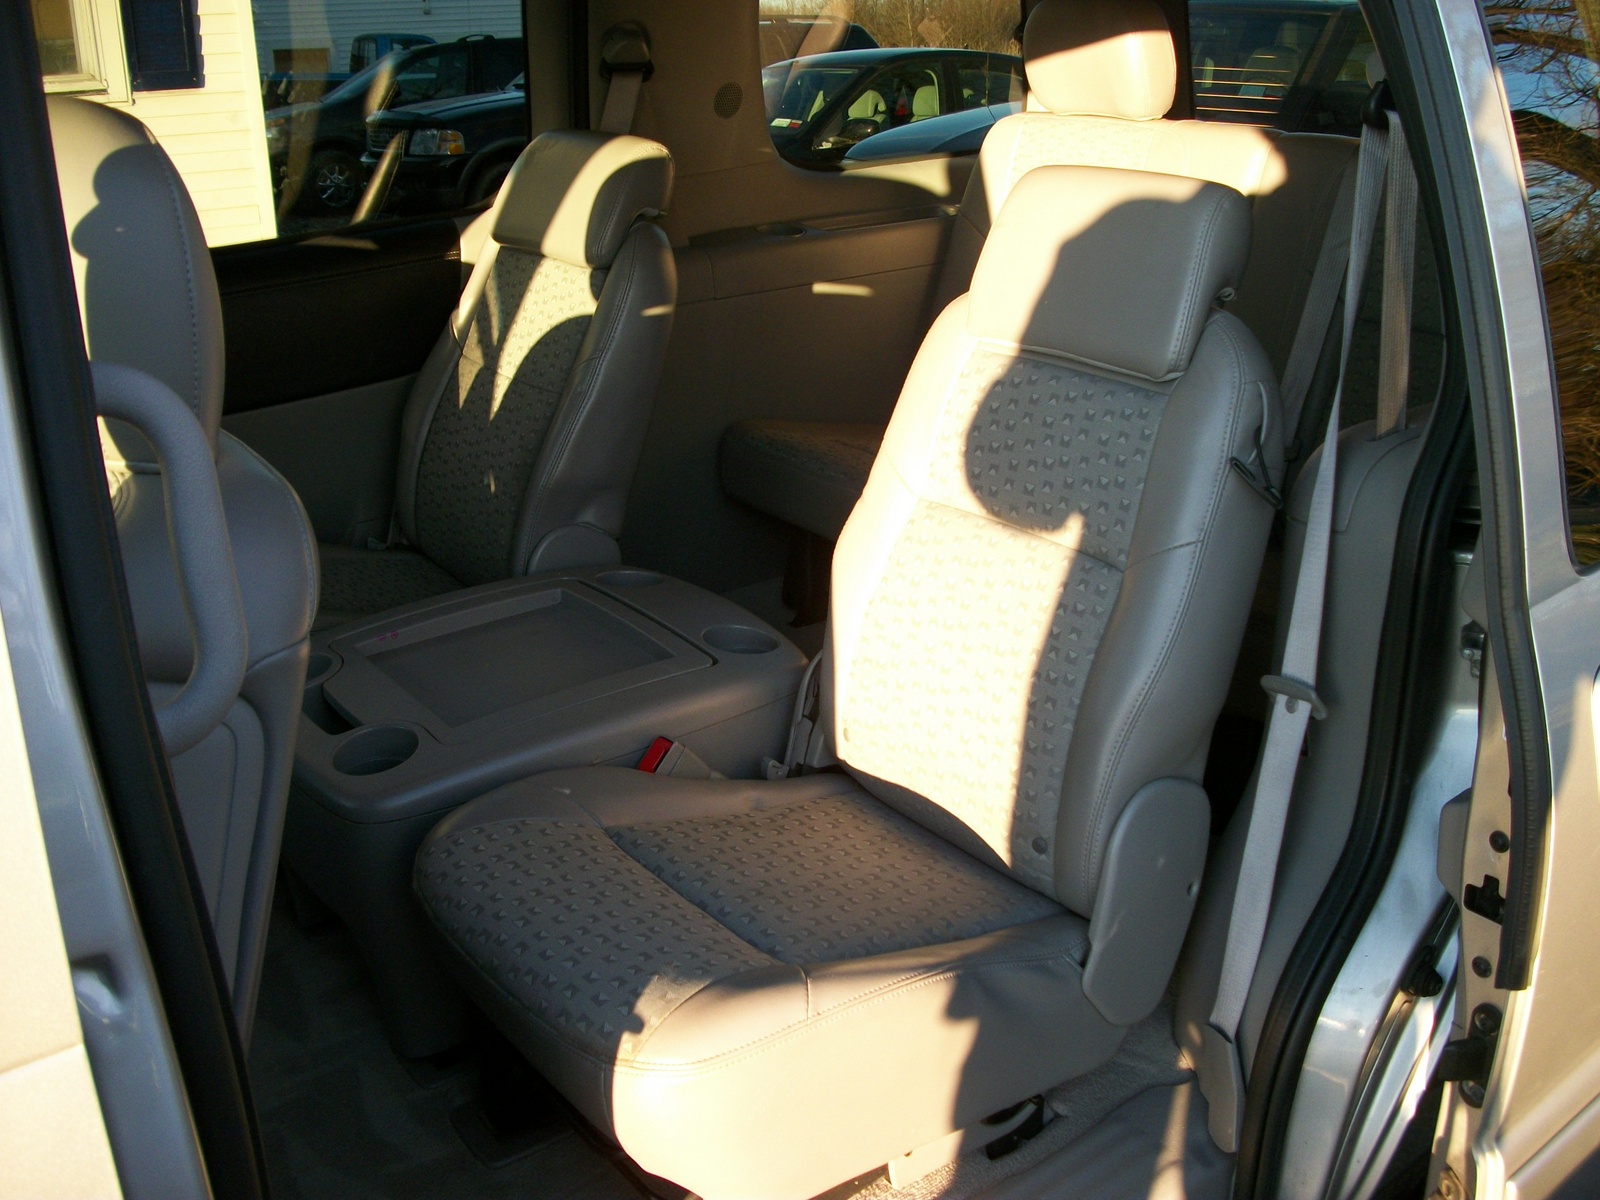 2005 Chevrolet Uplander - Interior Pictures - CarGurus